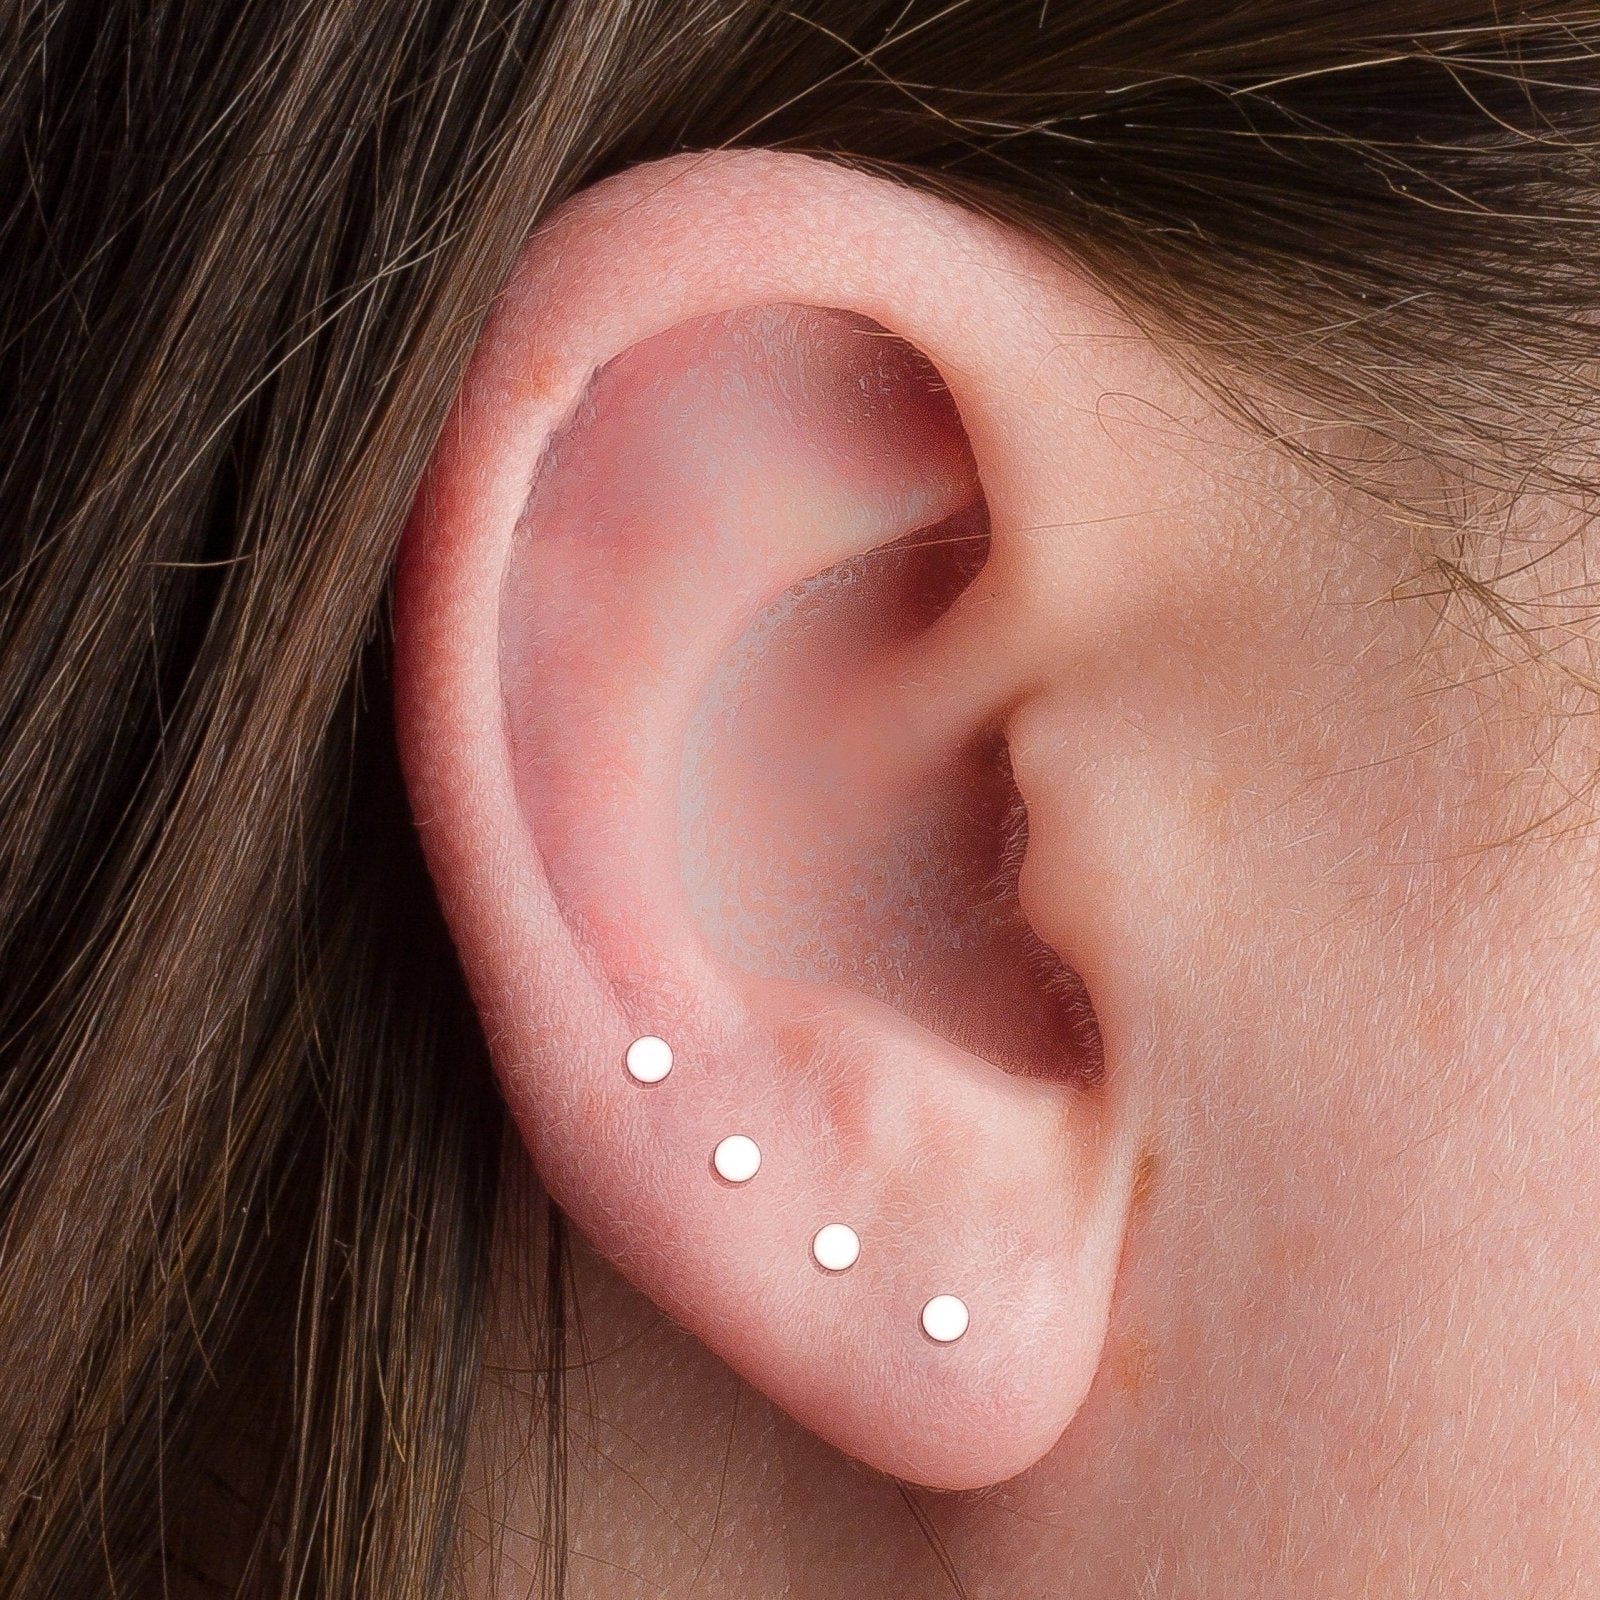 2mm Dot Disc Stud Earrings - Melanie Golden Jewelry - earrings, everyday, minimal, minimal jewelry, post earrings, silver, stud, stud earrings